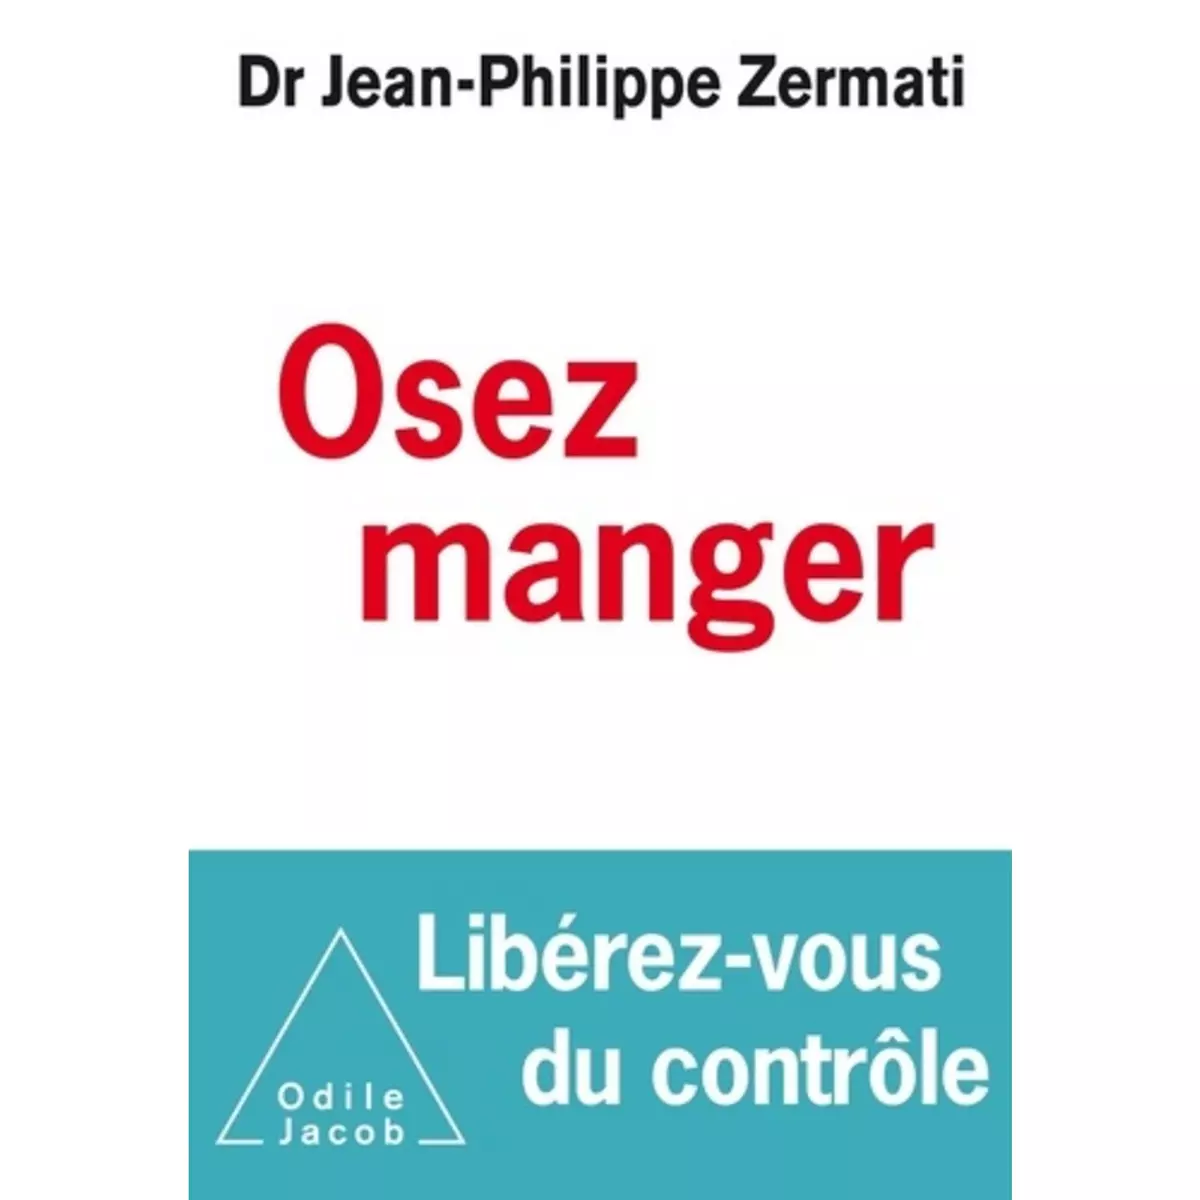  OSEZ MANGER, LIBEREZ-VOUS DU CONTROLE, Zermati Jean-Philippe